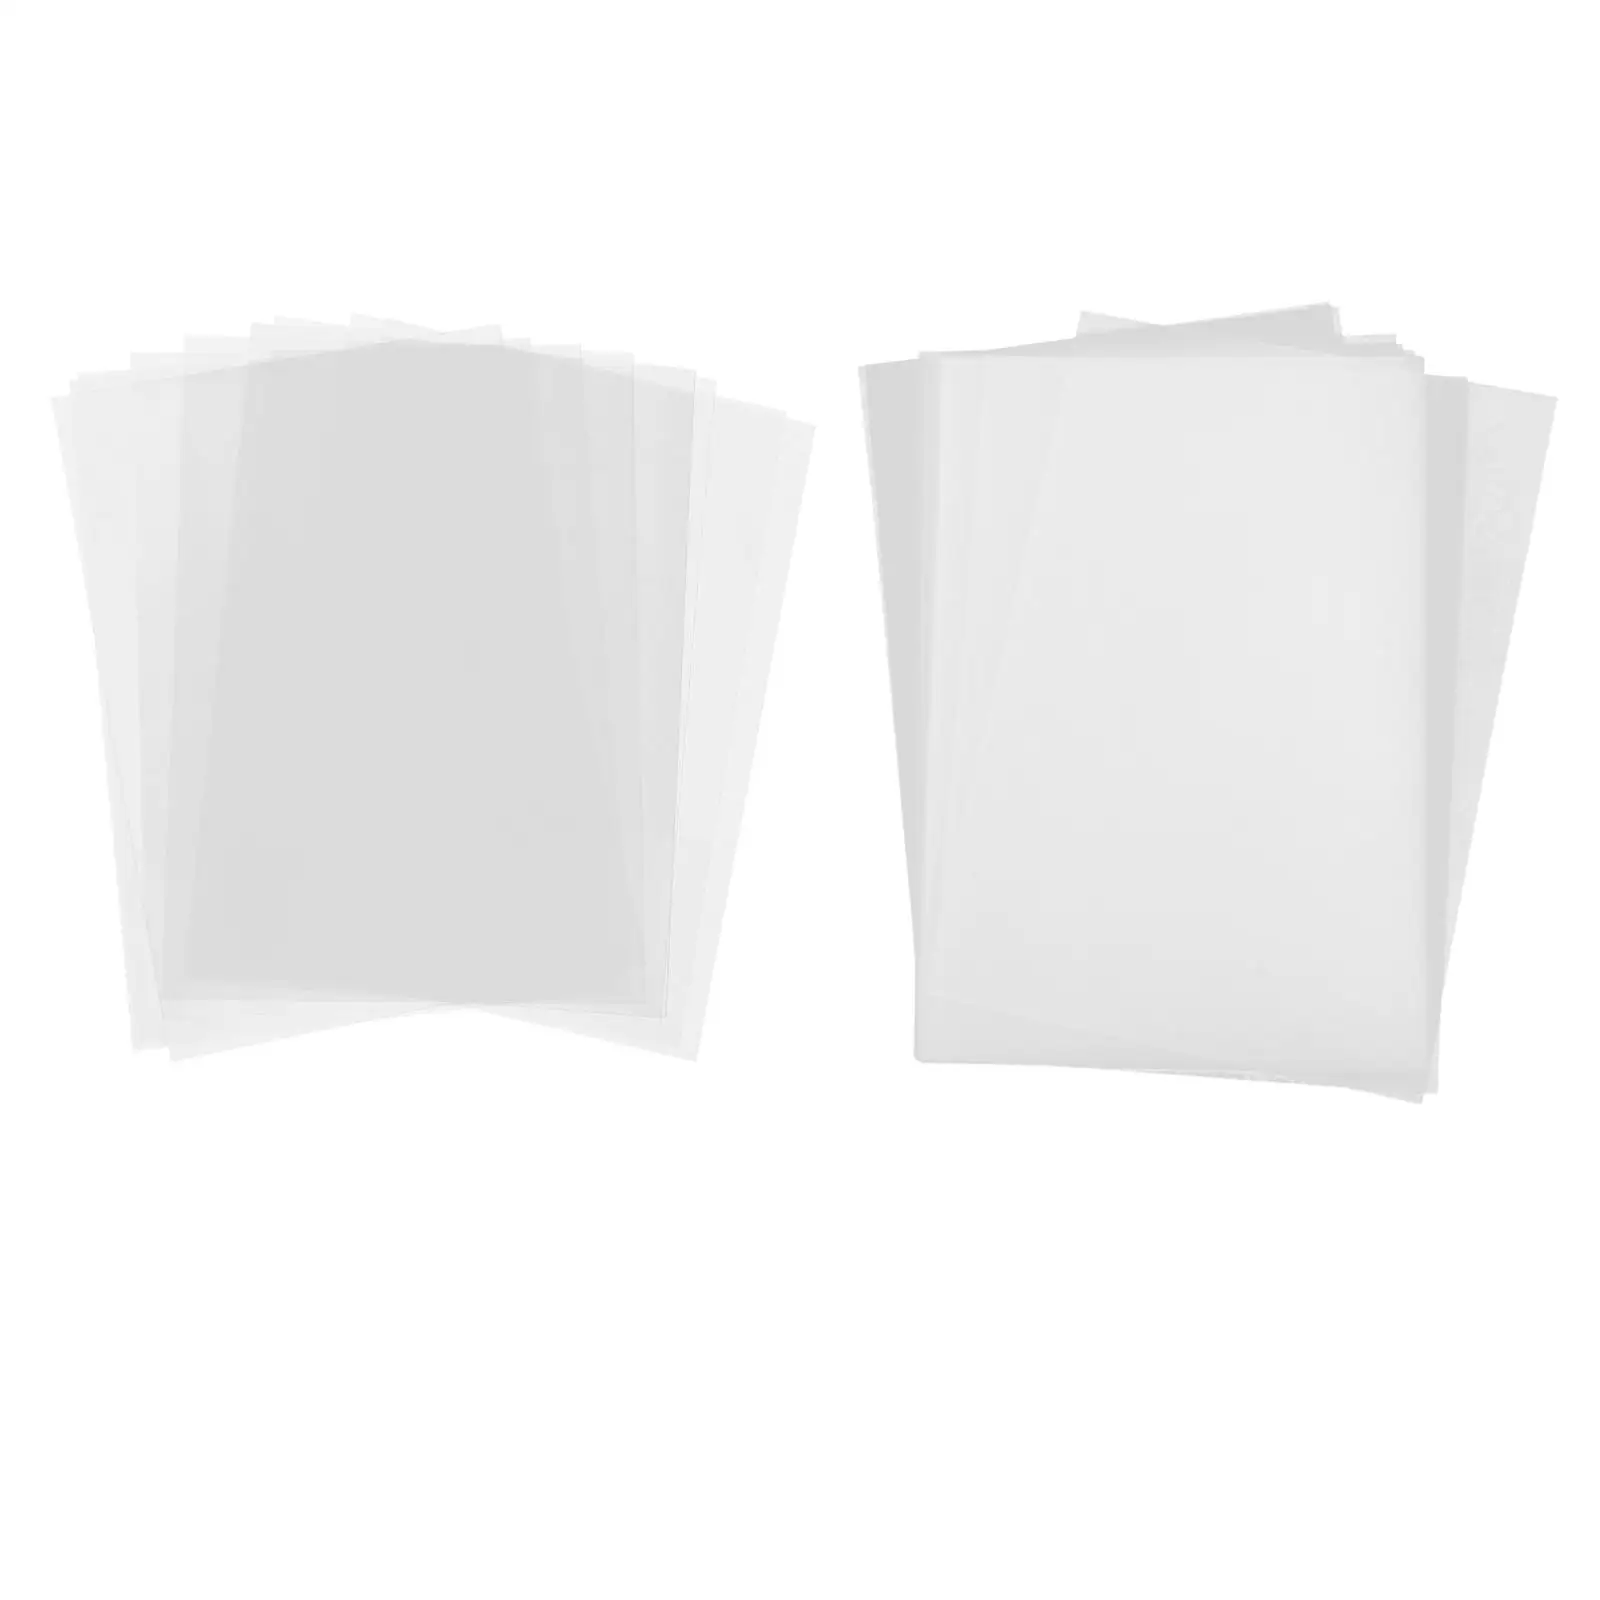 10 Shrink Sheets DIY Crafts to Make Blank Foil Paper Printable